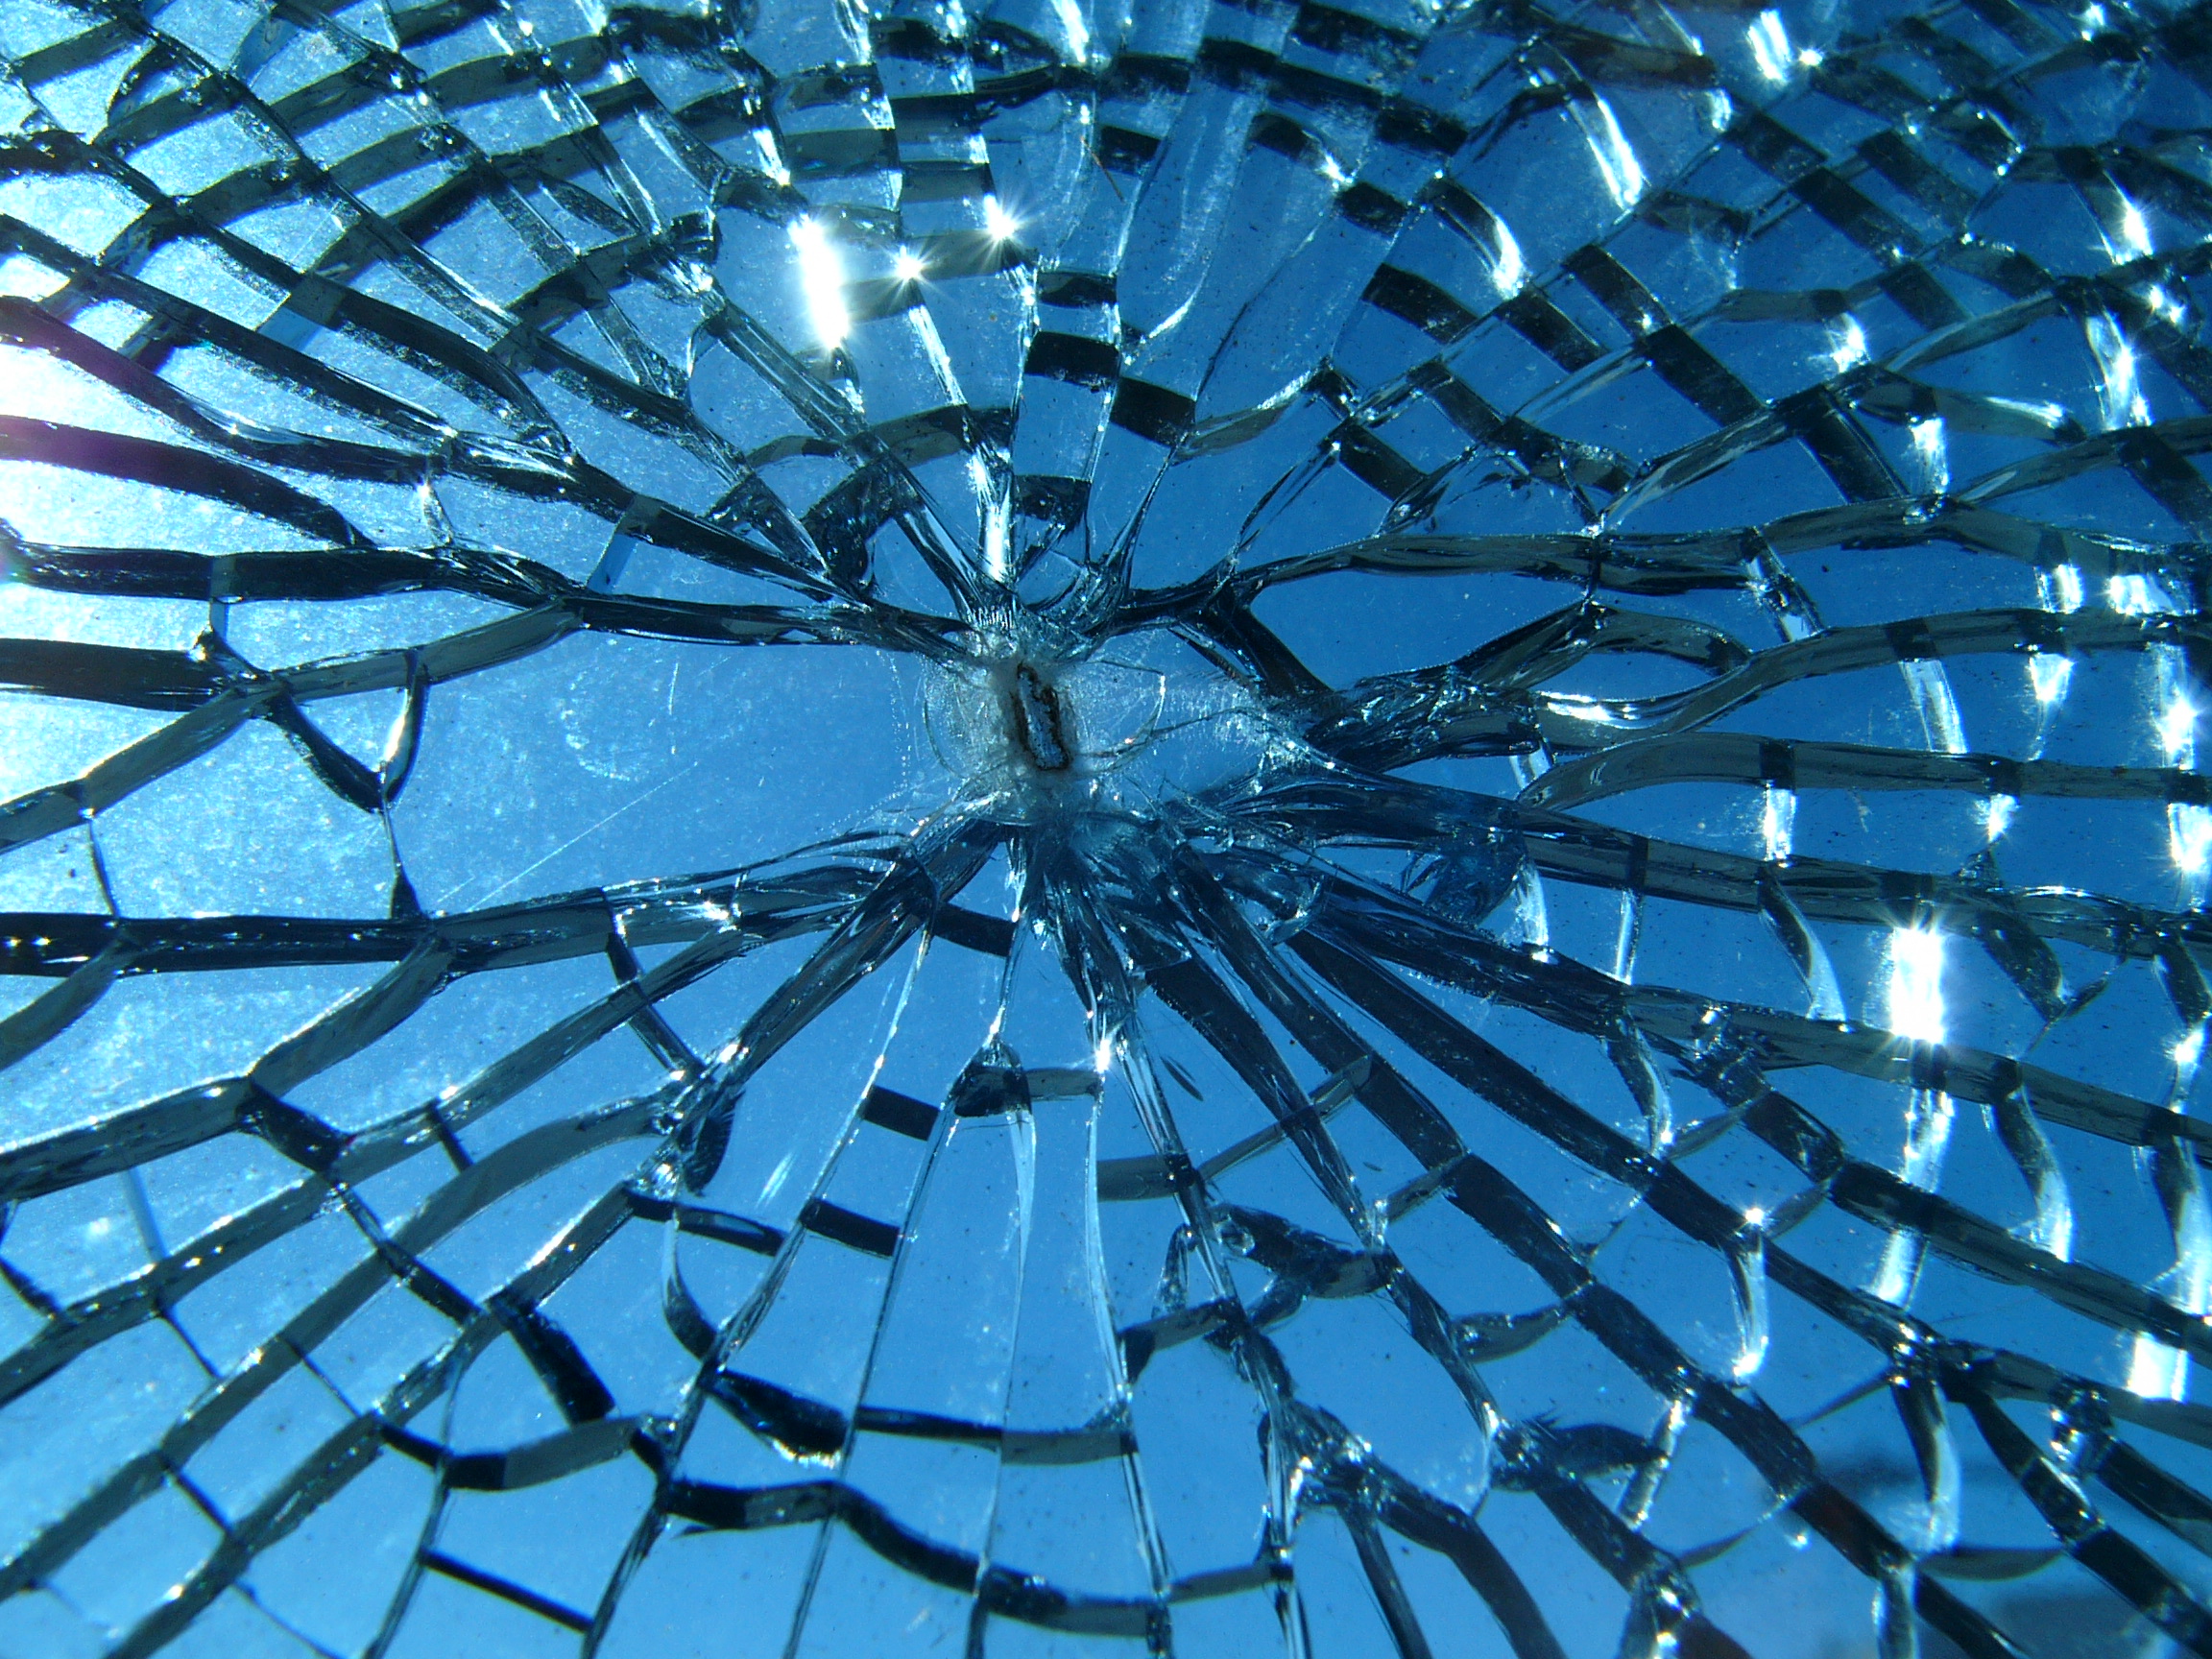 pieces of broken glass